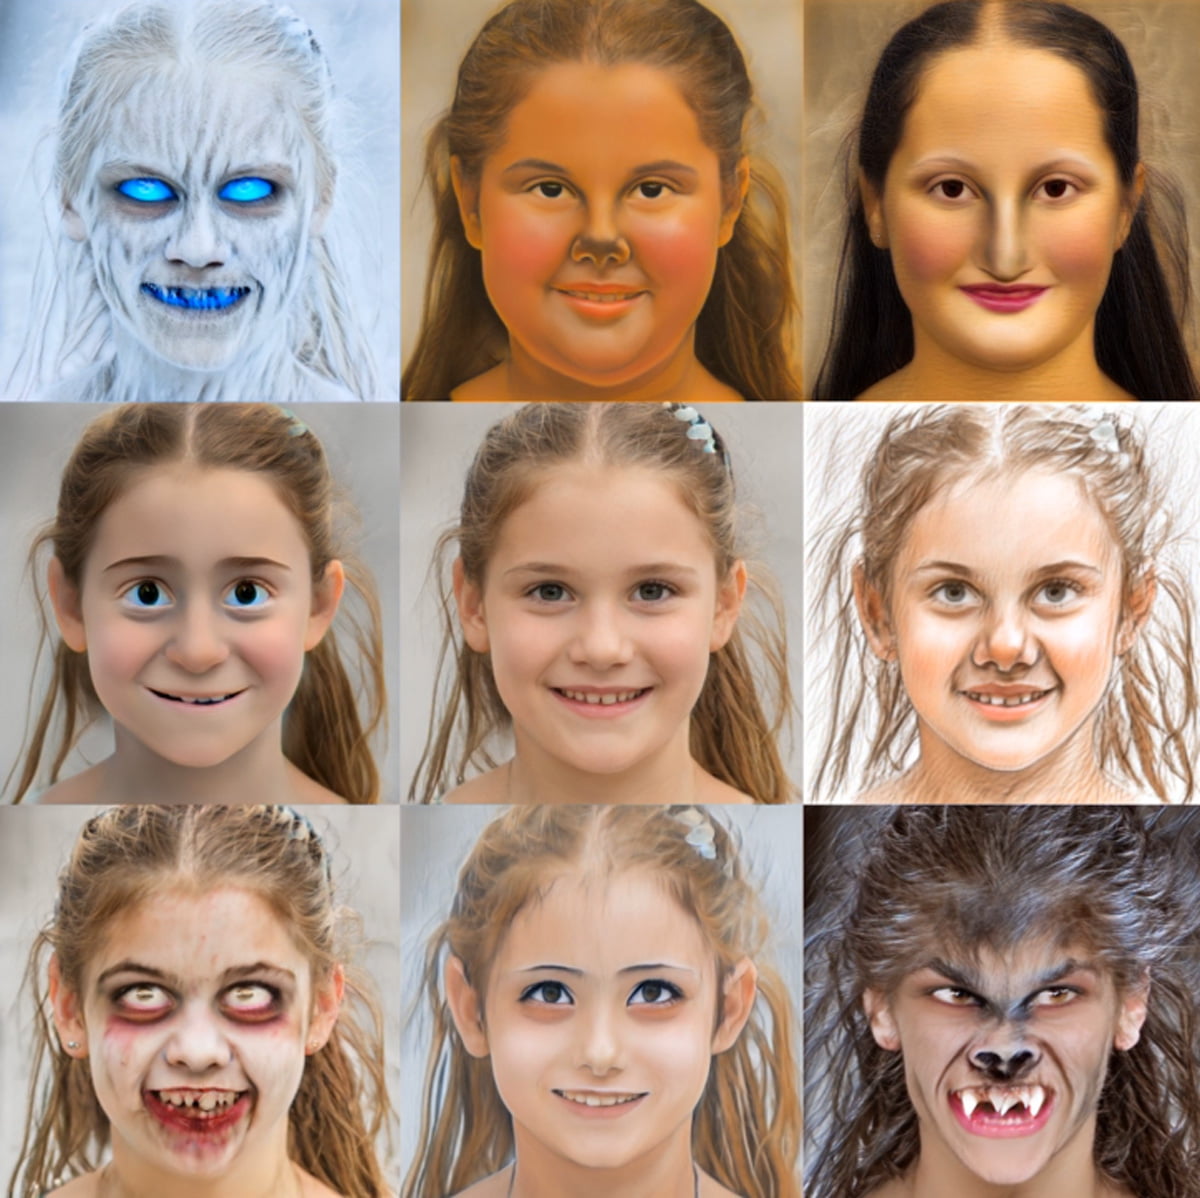 KI-generierte Porträtfotos in verschiedenen Versionen wie etwa als Mensch, Werwolf oder Zombie